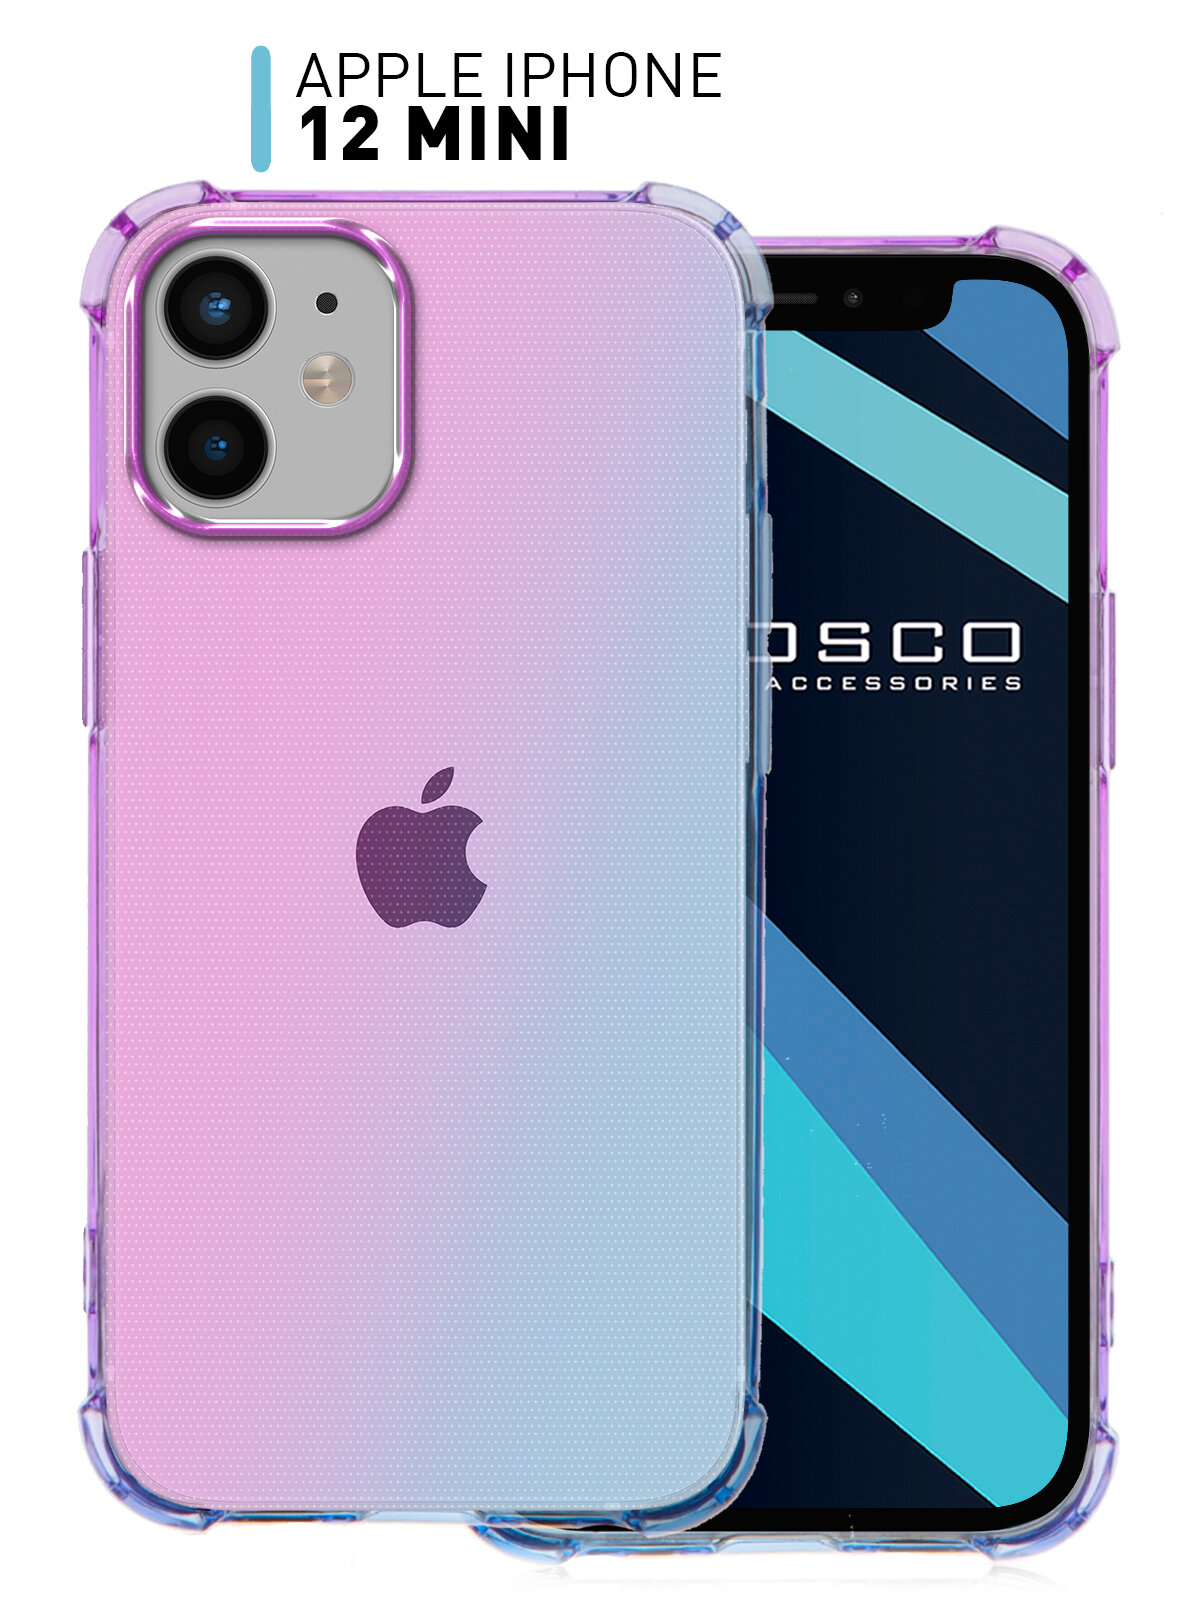 Противоударный чехол для Apple iPhone 12 mini (Эпл Айфон 12 мини) усиленный с бортиком (защитой) камер, прозрачный силиконовый сиренево-голубой ROSCO